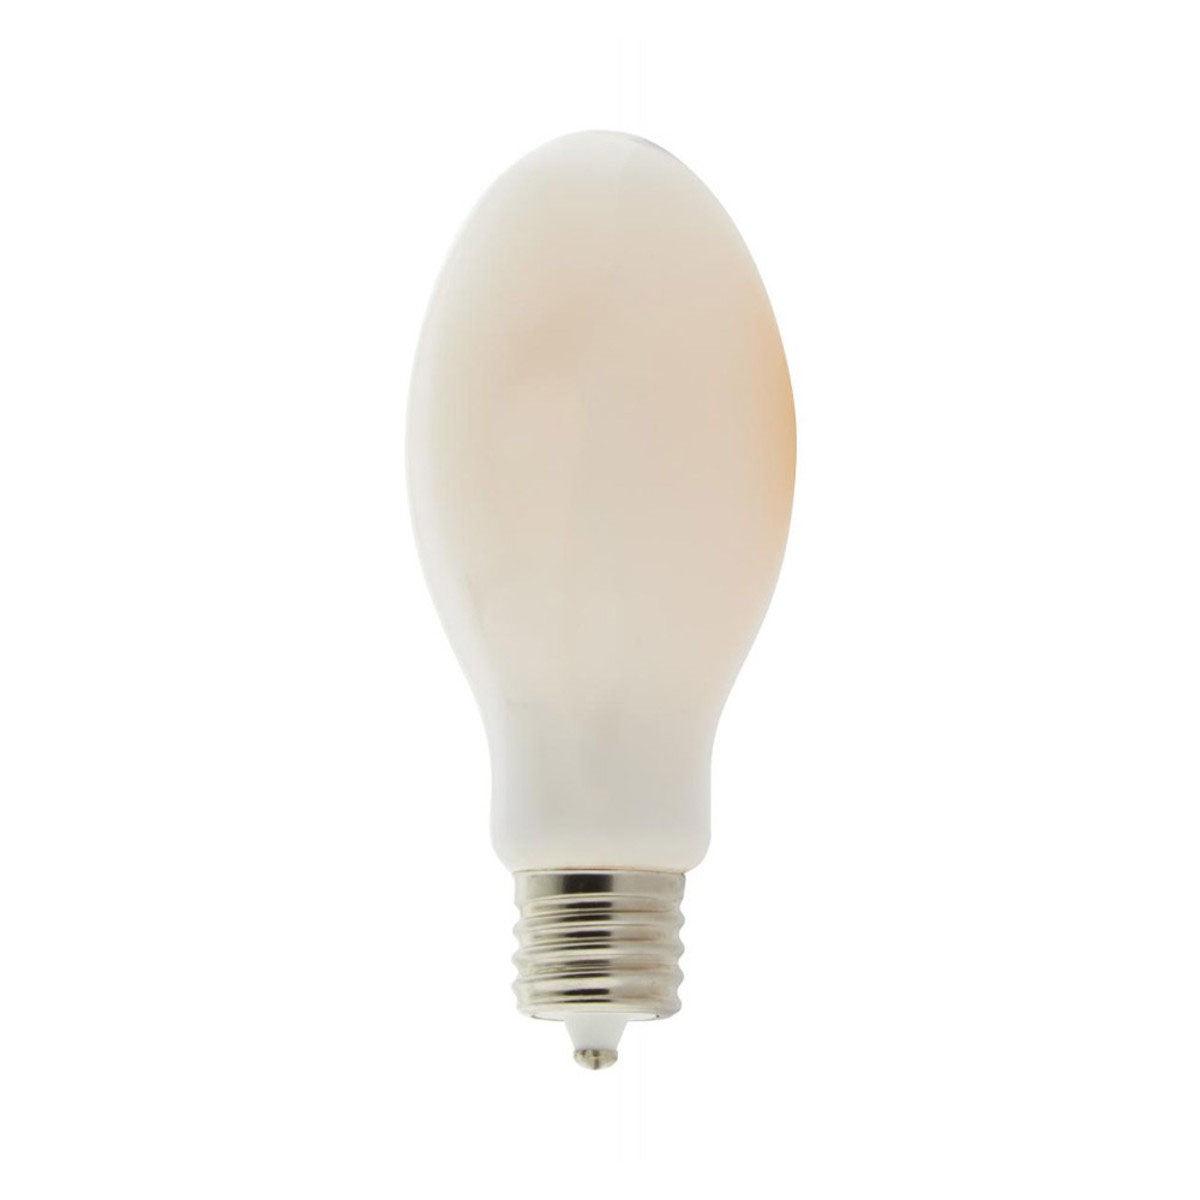 LED ED28 Bulb, 36 Watt, 5000 Lumens, 5000K, EX39 Mogul Extended Base, White Frosted Finish